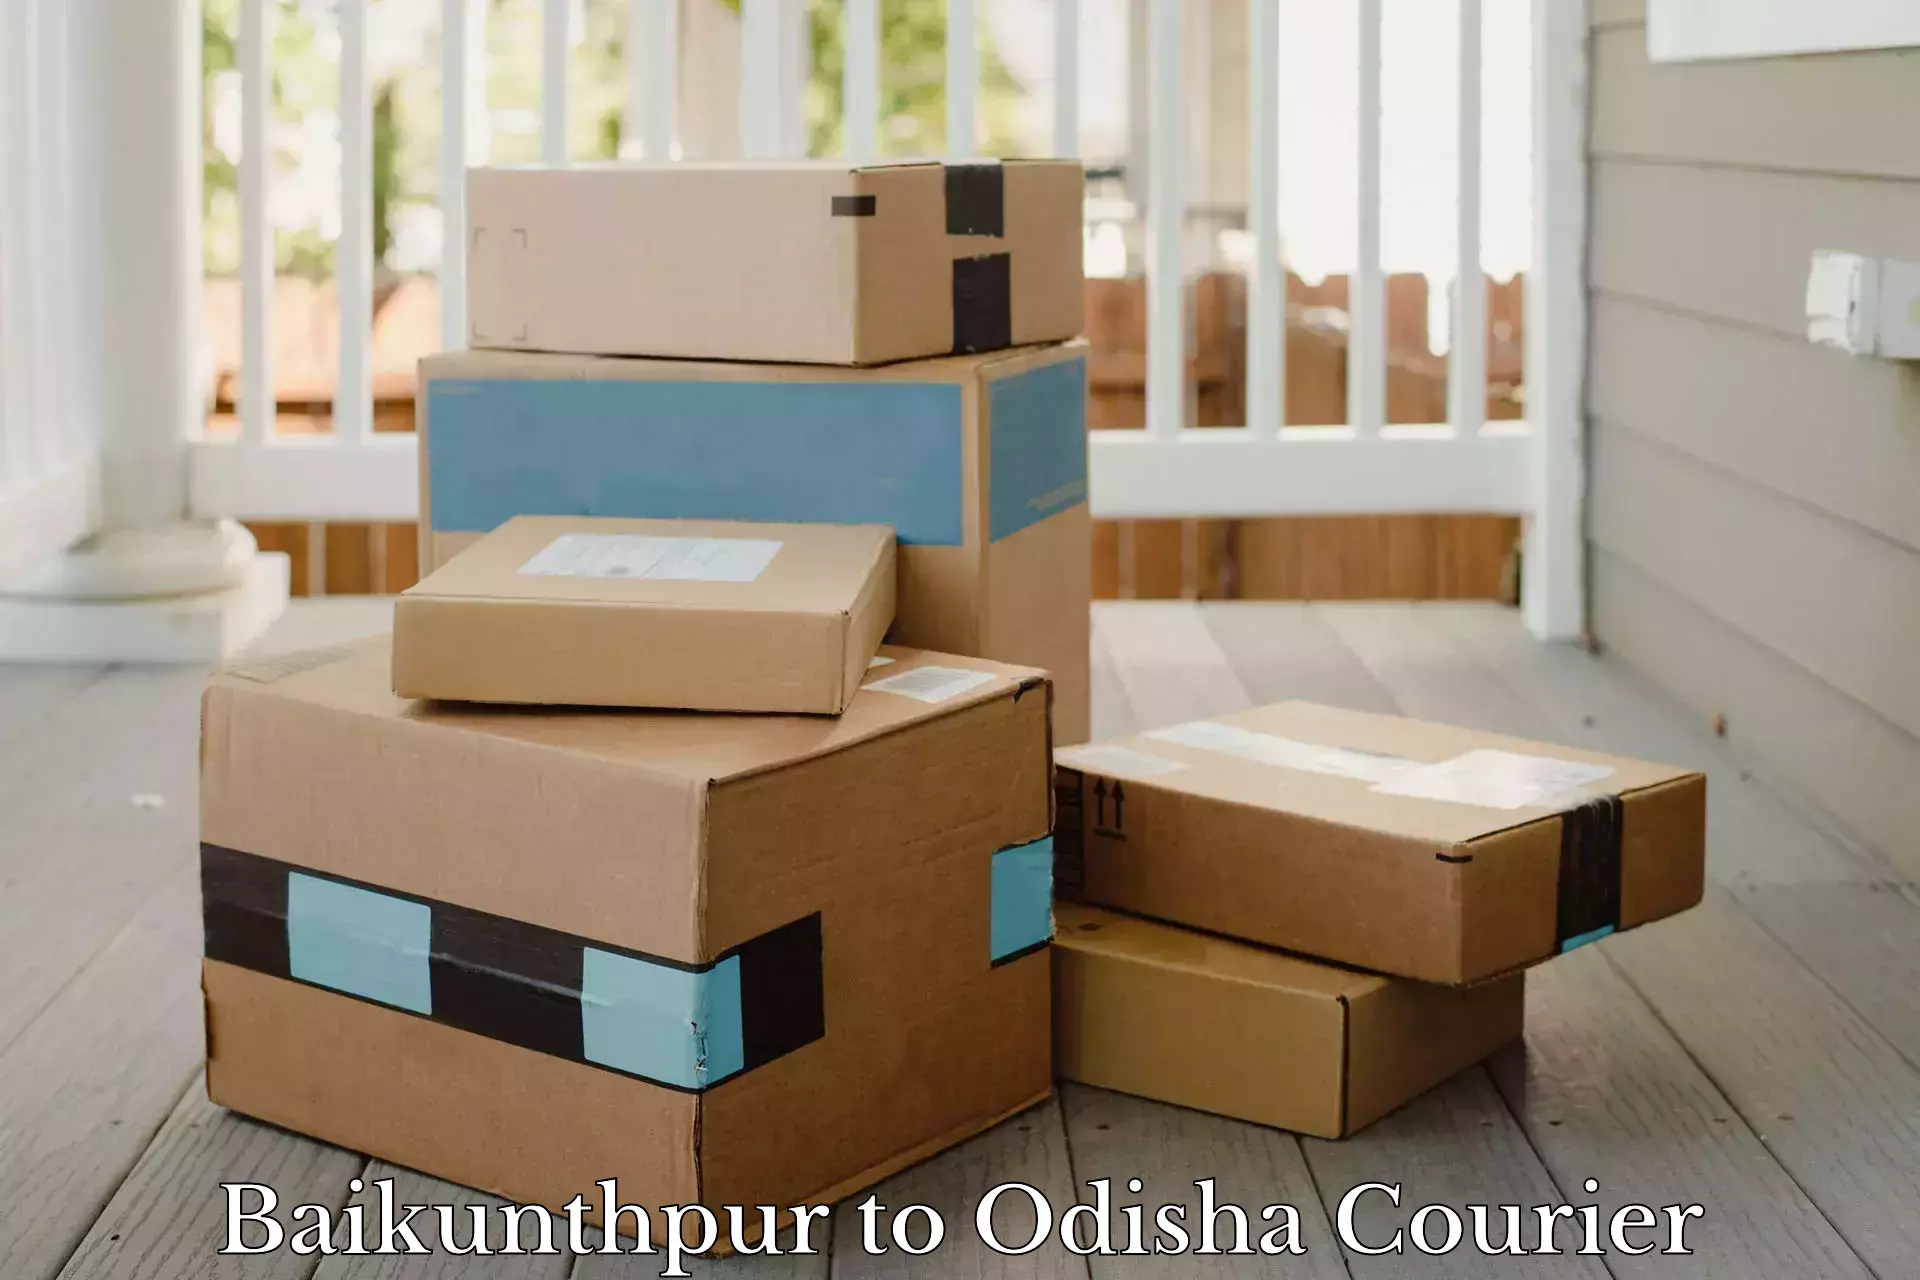 Parcel delivery in Baikunthpur to Nirakarpur